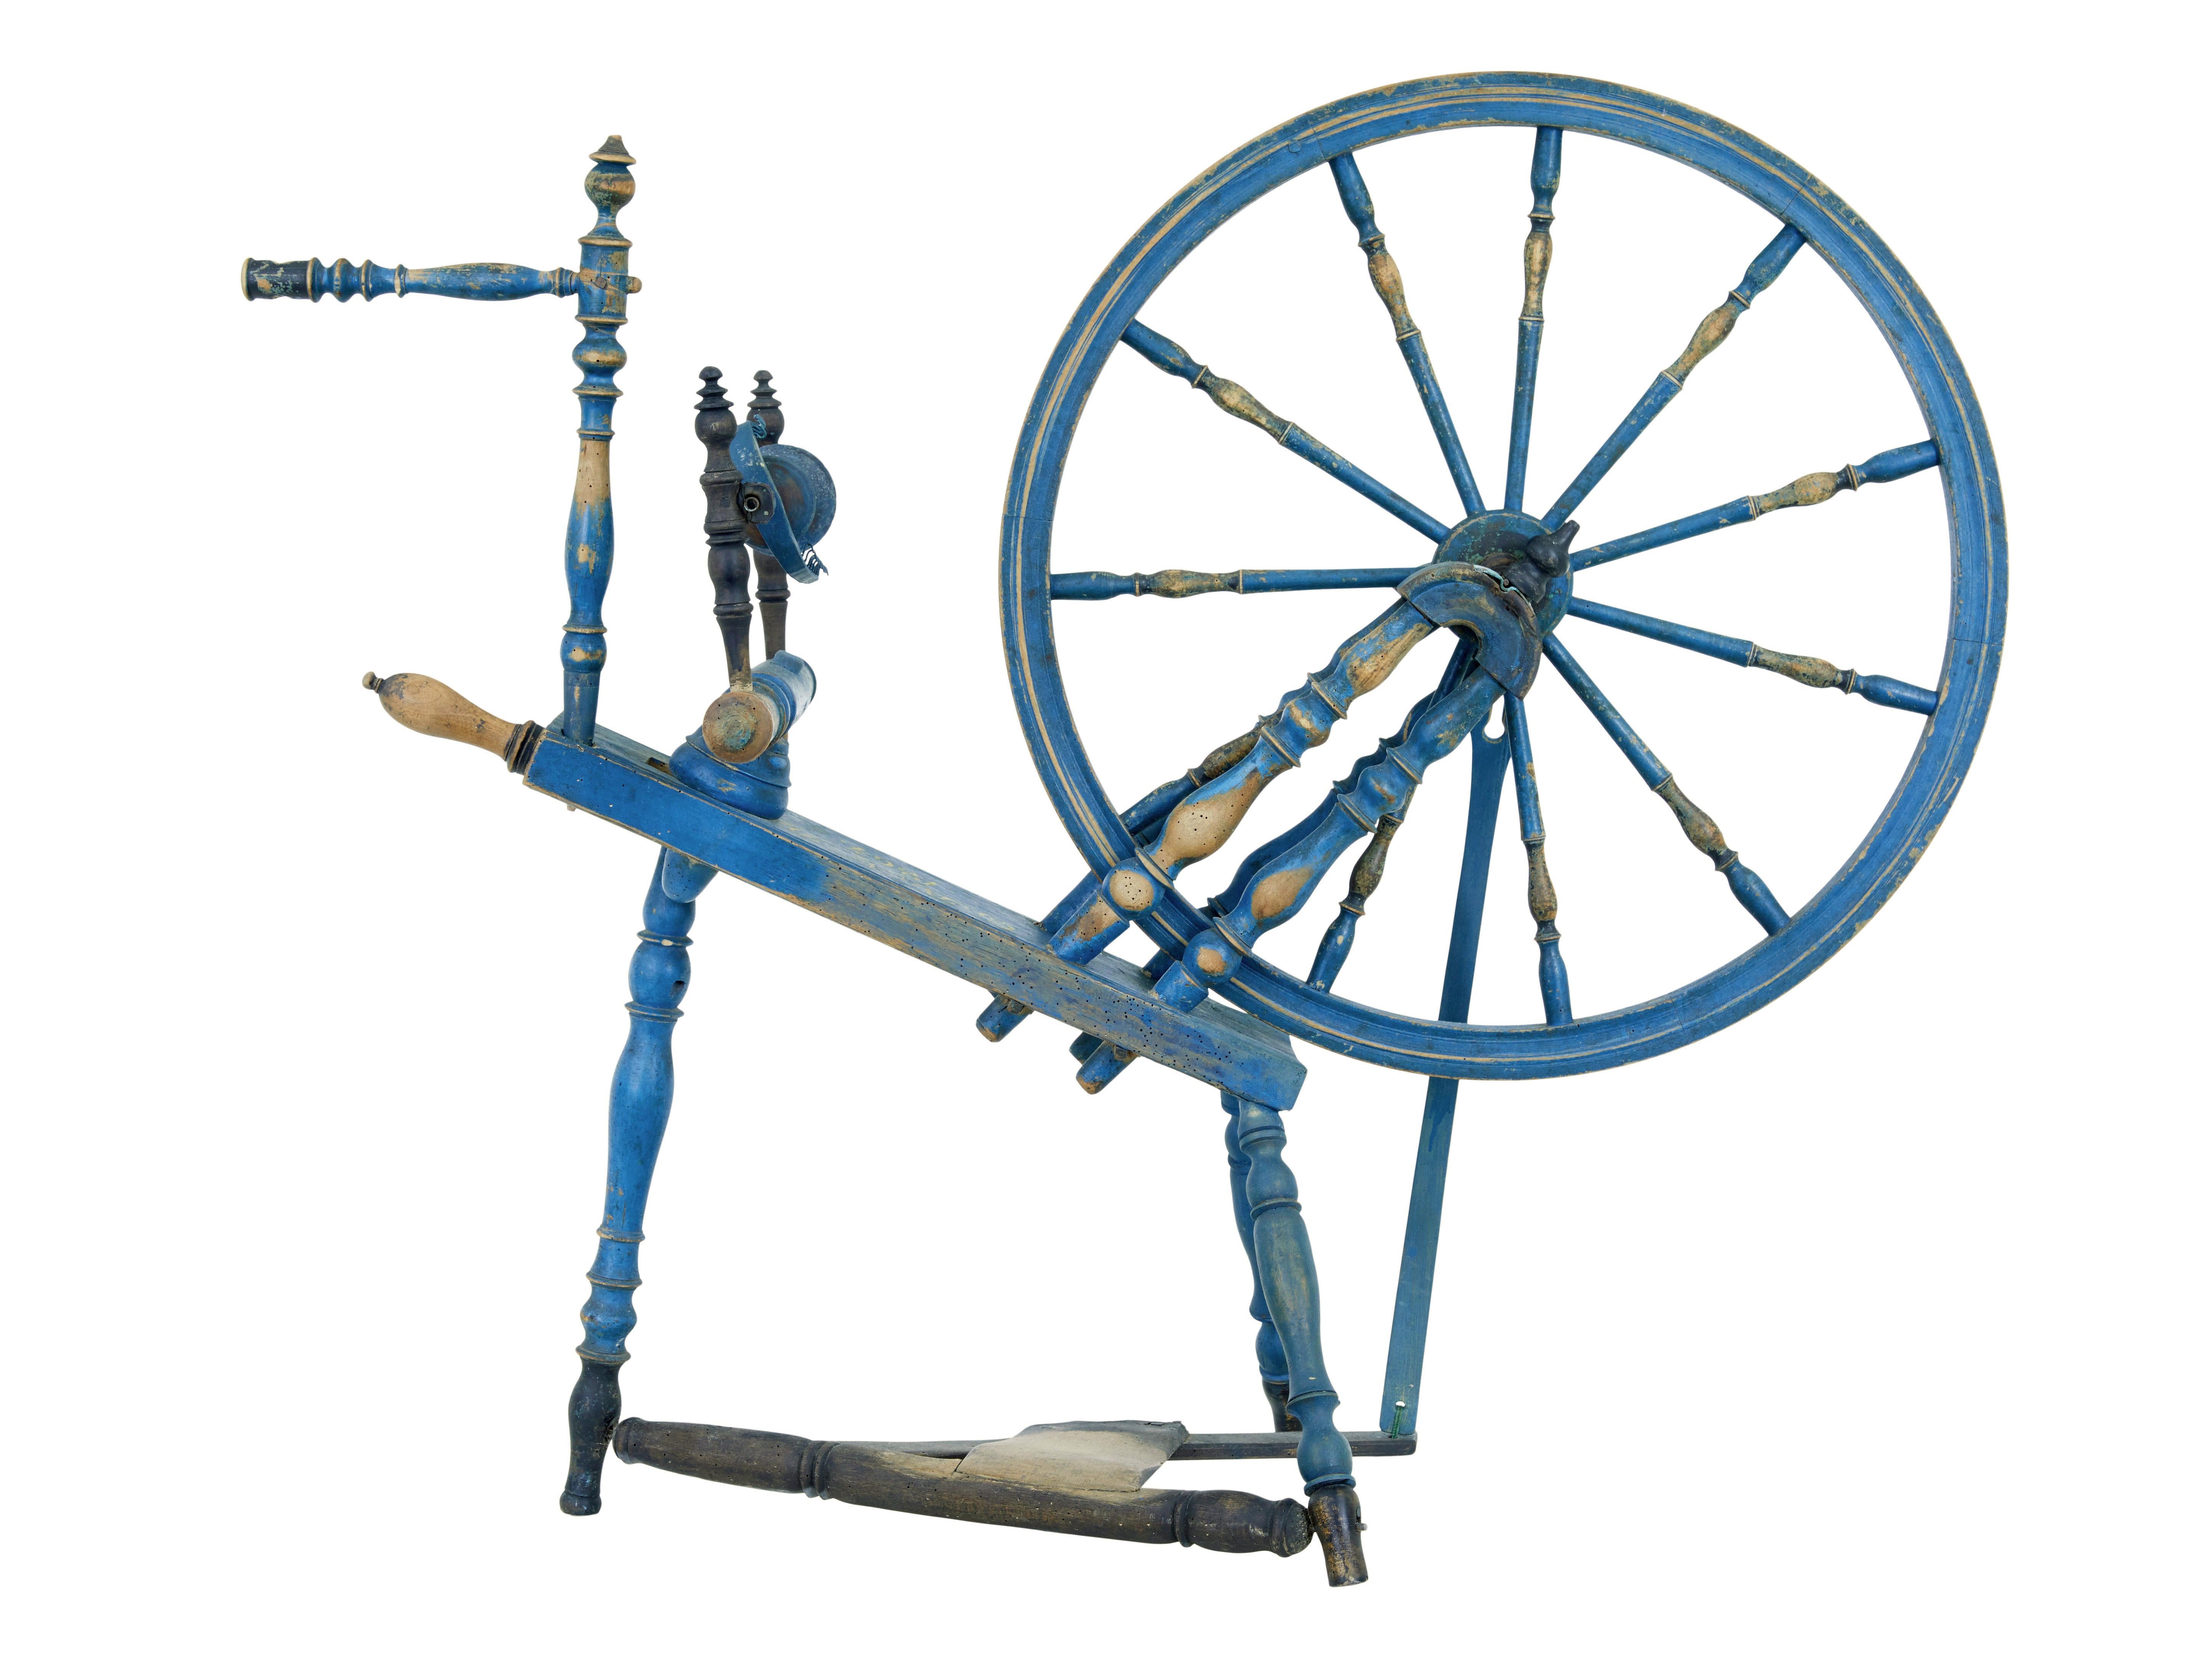 Schwedisches bemaltes Spinnrad aus dem 19. Jahrhundert, um 1864.

Ein schönes Stück traditioneller schwedischer Geschichte.  Als kleines Modell mit Fußpedal wurde diese Maschine wahrscheinlich zum Spinnen von Flachs für die Leinenherstellung